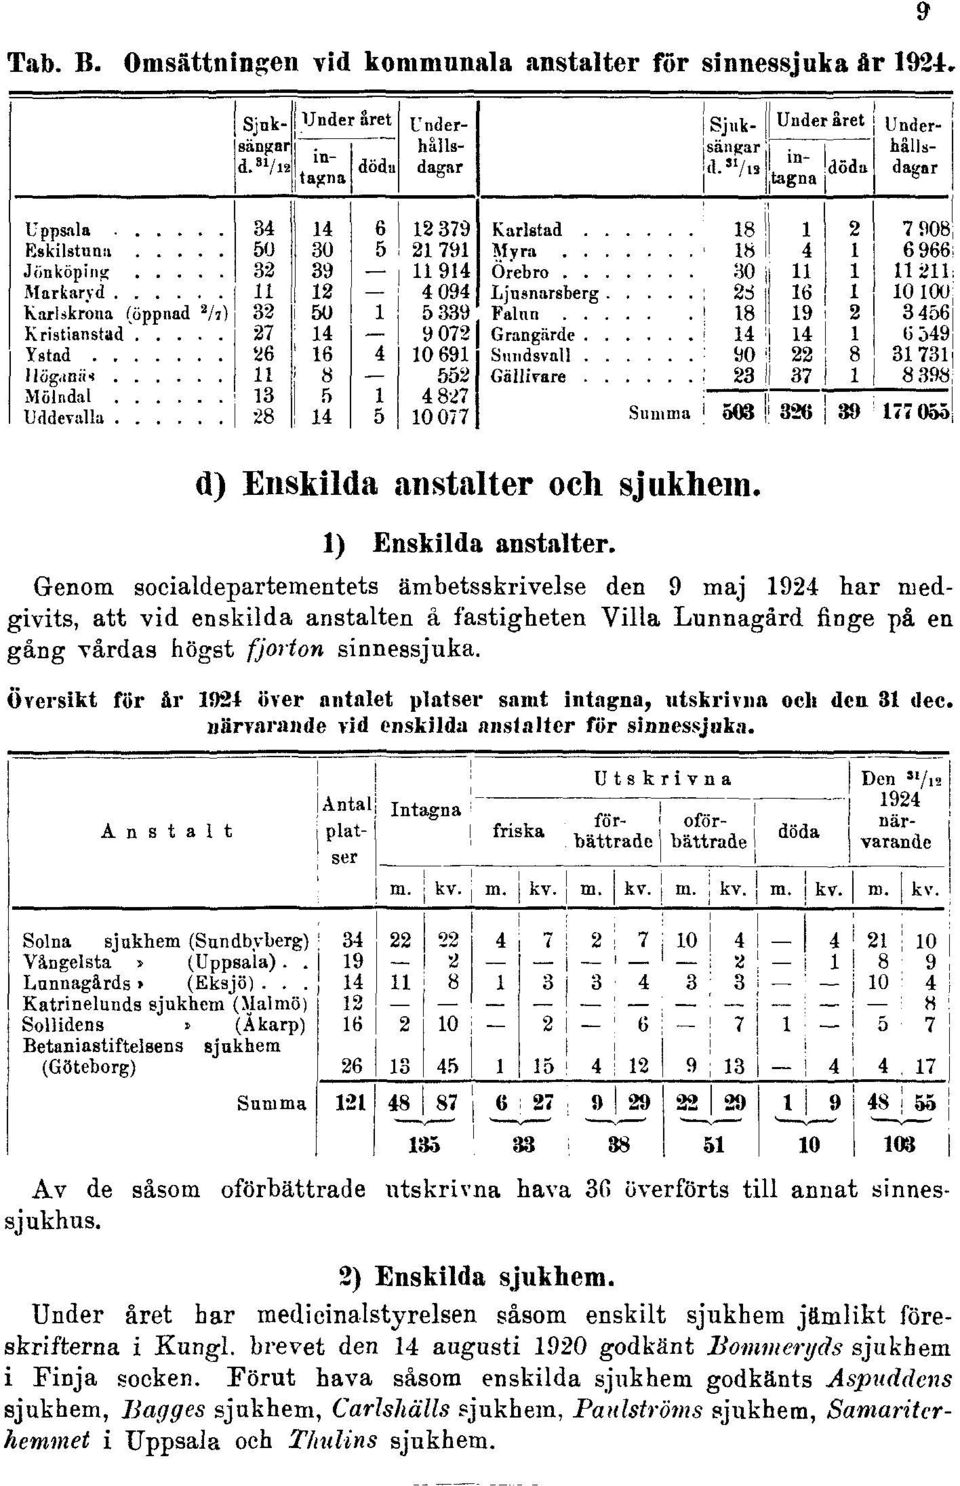 Översikt för år 1924 över antalet platser samt intagna, utskrivna och den 31 dec. närvarande vid enskilda anstalter för sinnessjuka.